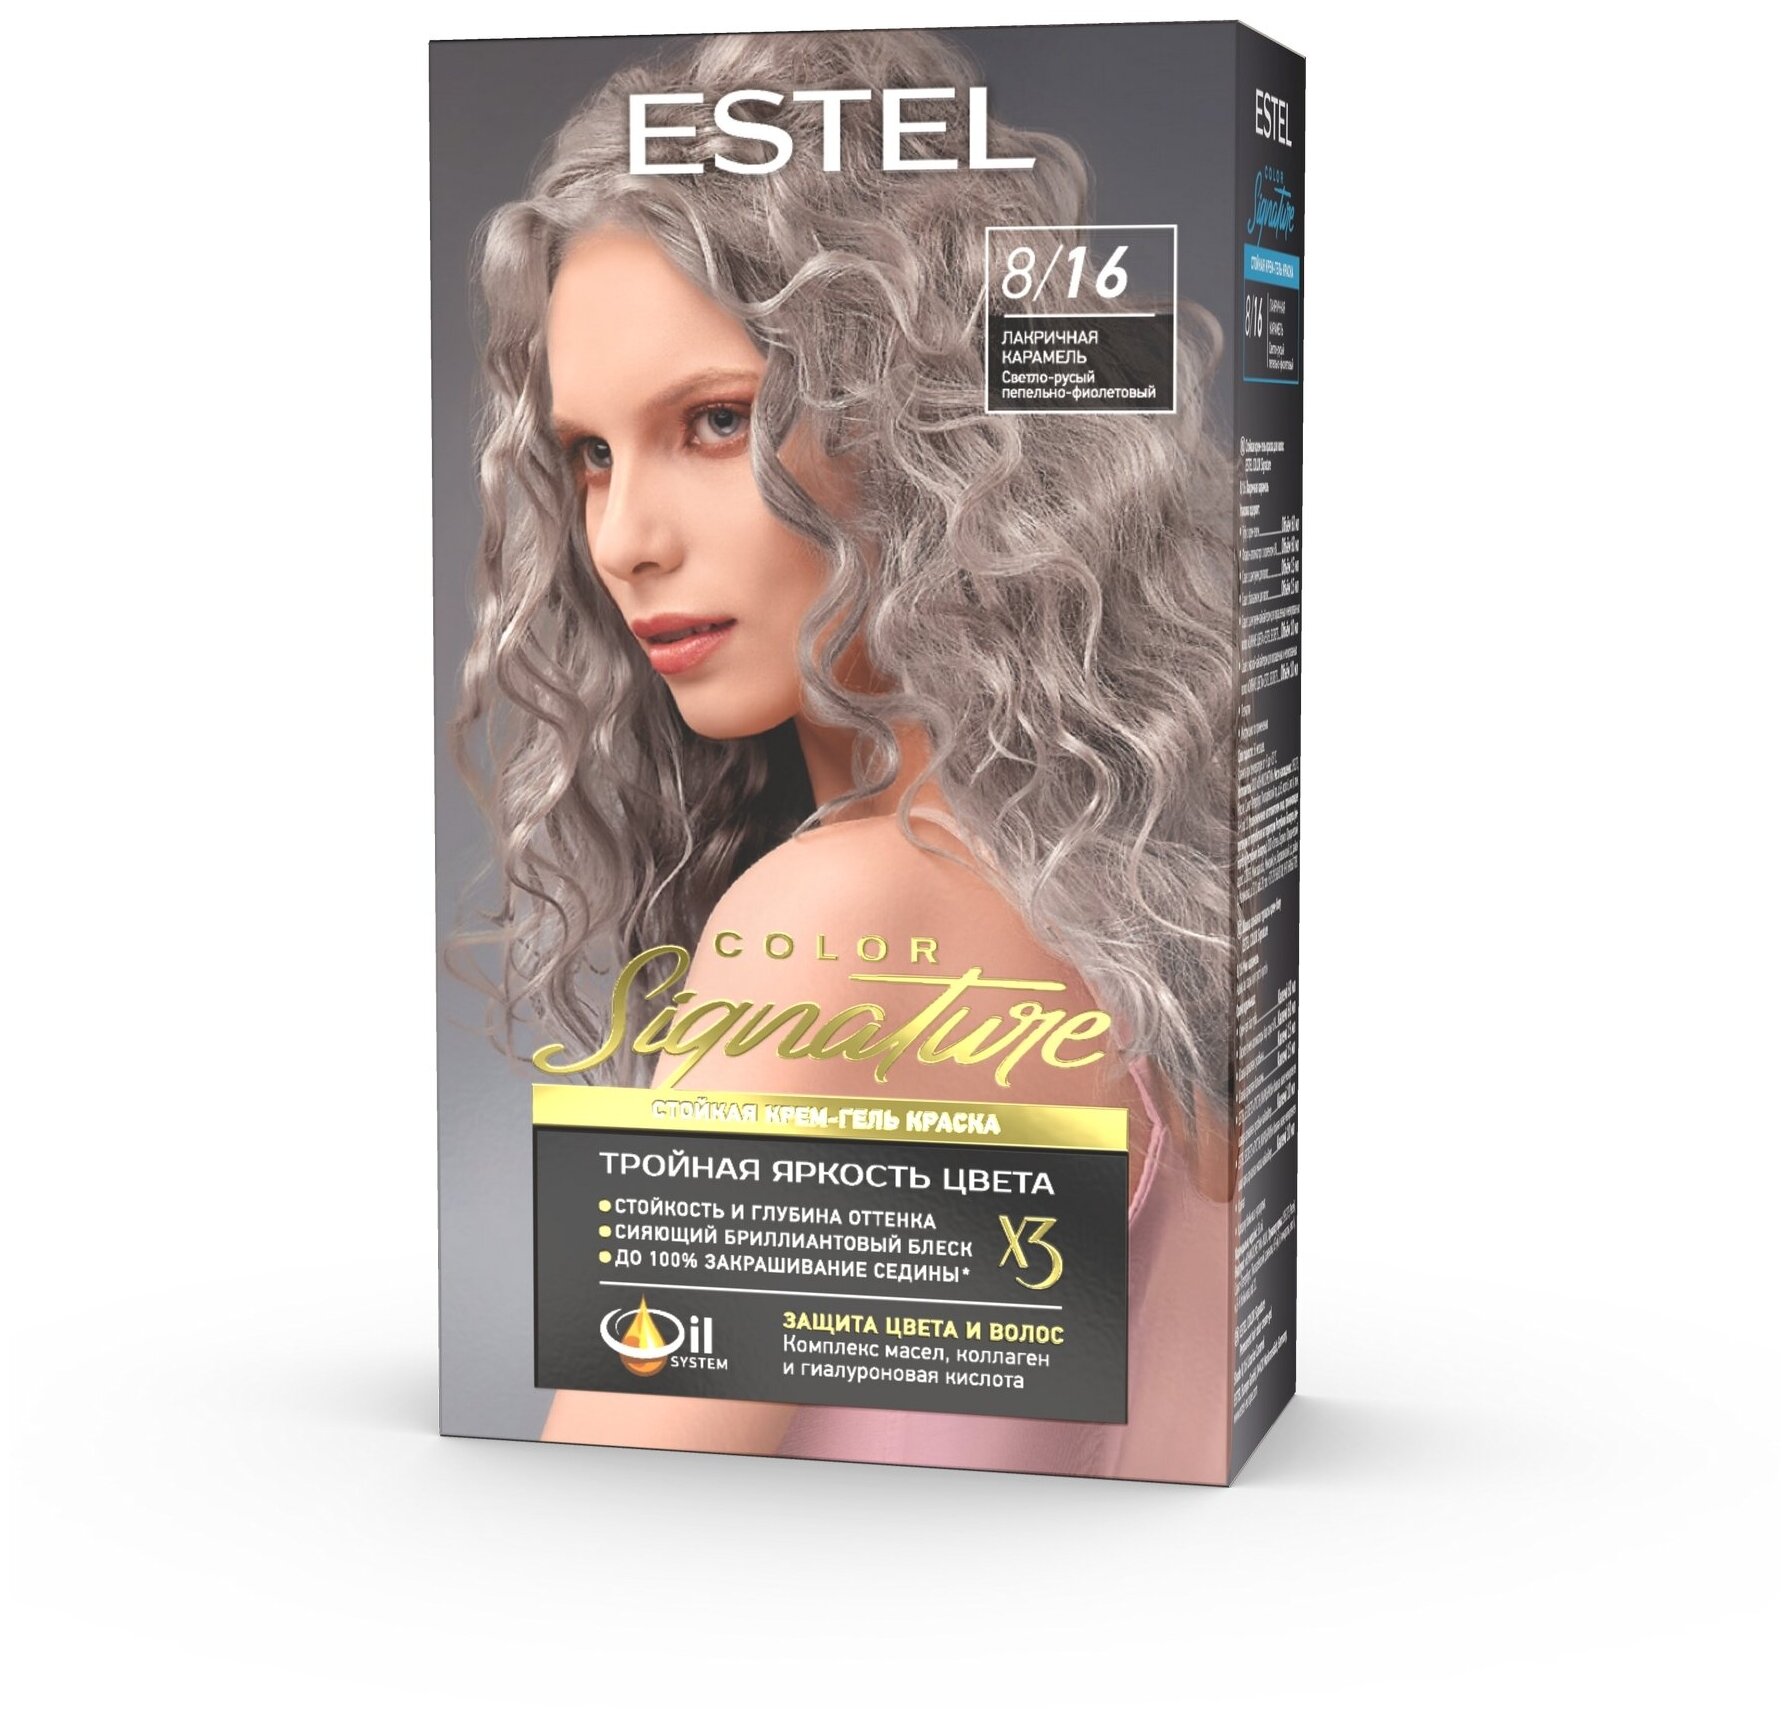 ESTEL Стойкая крем-гель краска для волос COLOR Signature, 8/16 лакричная карамель, 120 мл